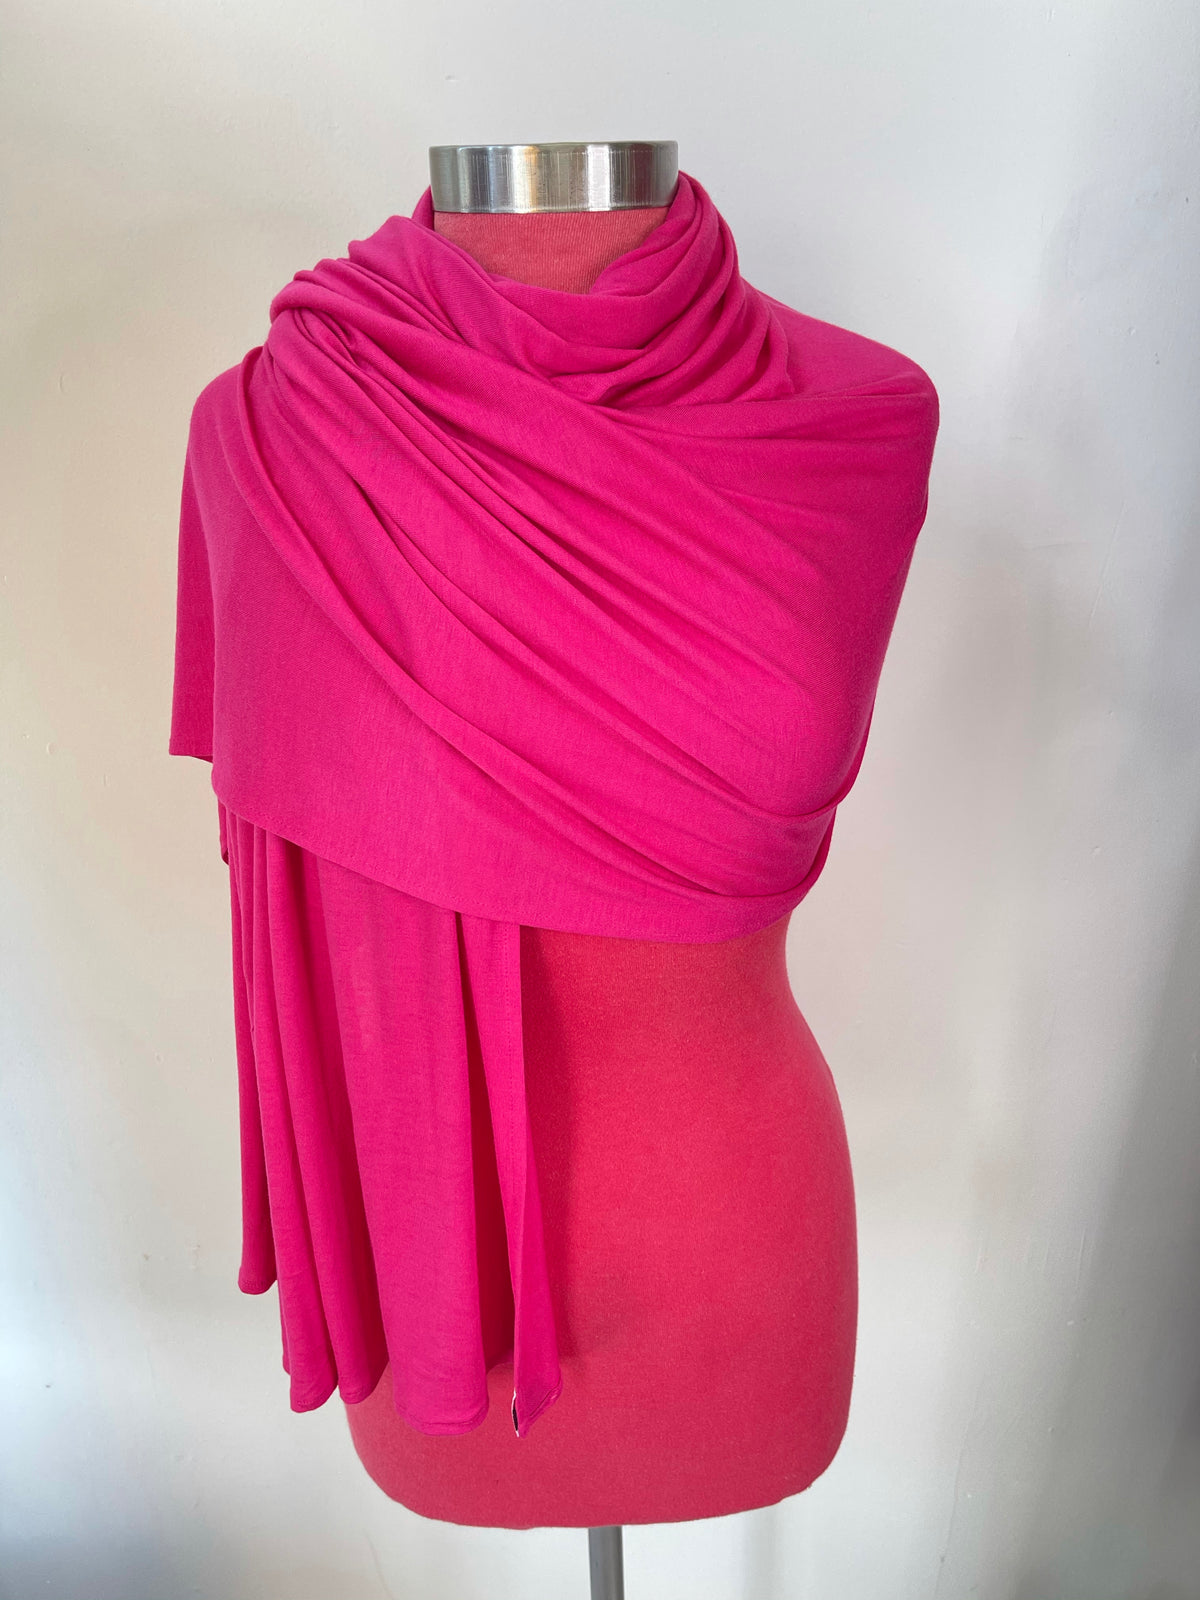 Magenta -  XL Jersey Knit Hijab